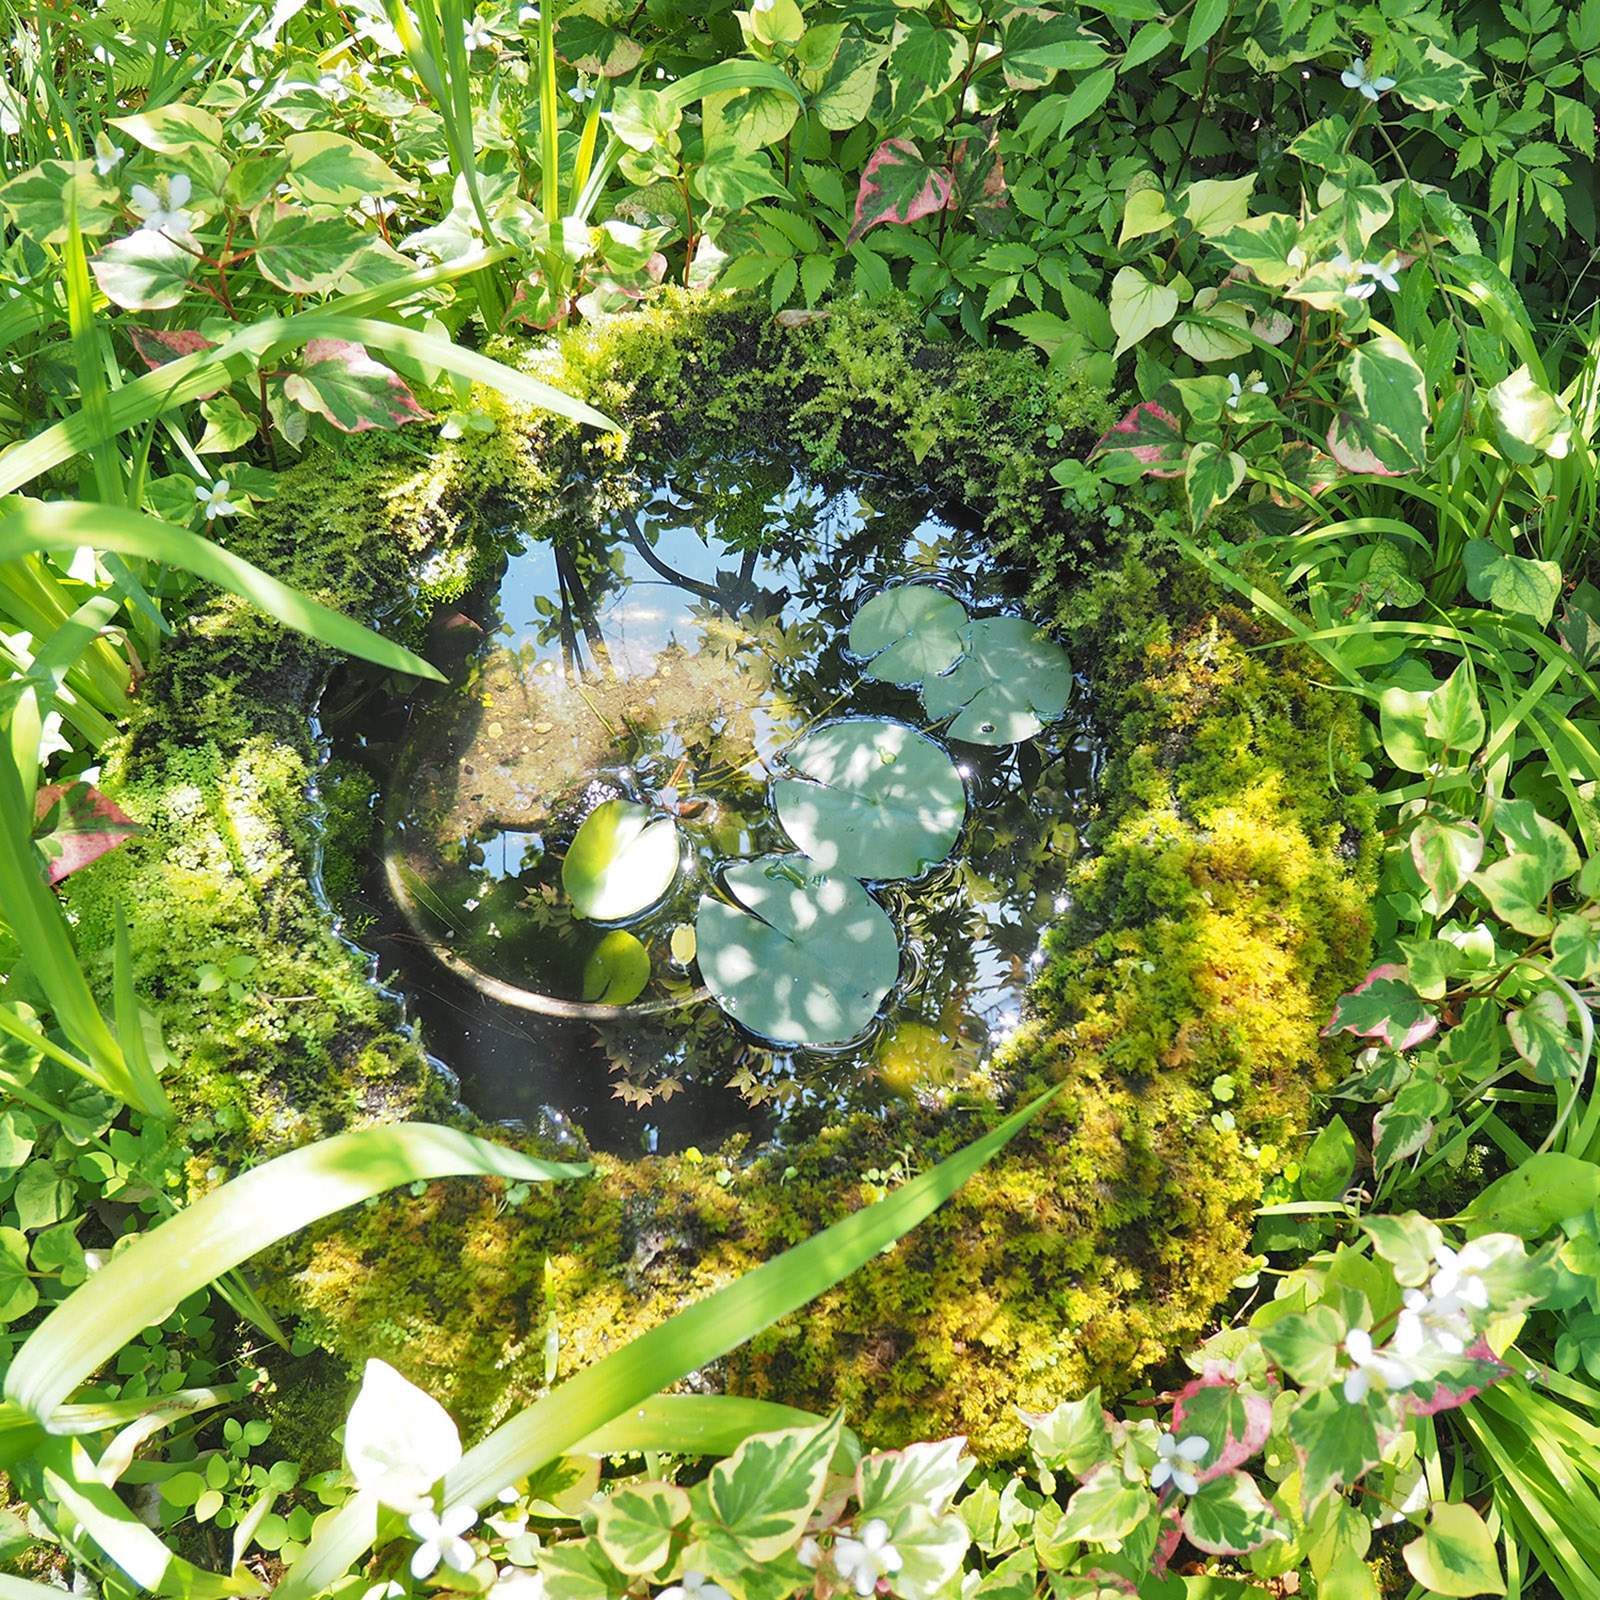 「自然とつながる庭」は戸野目の保阪邸の庭で6月15日に2回目を開催